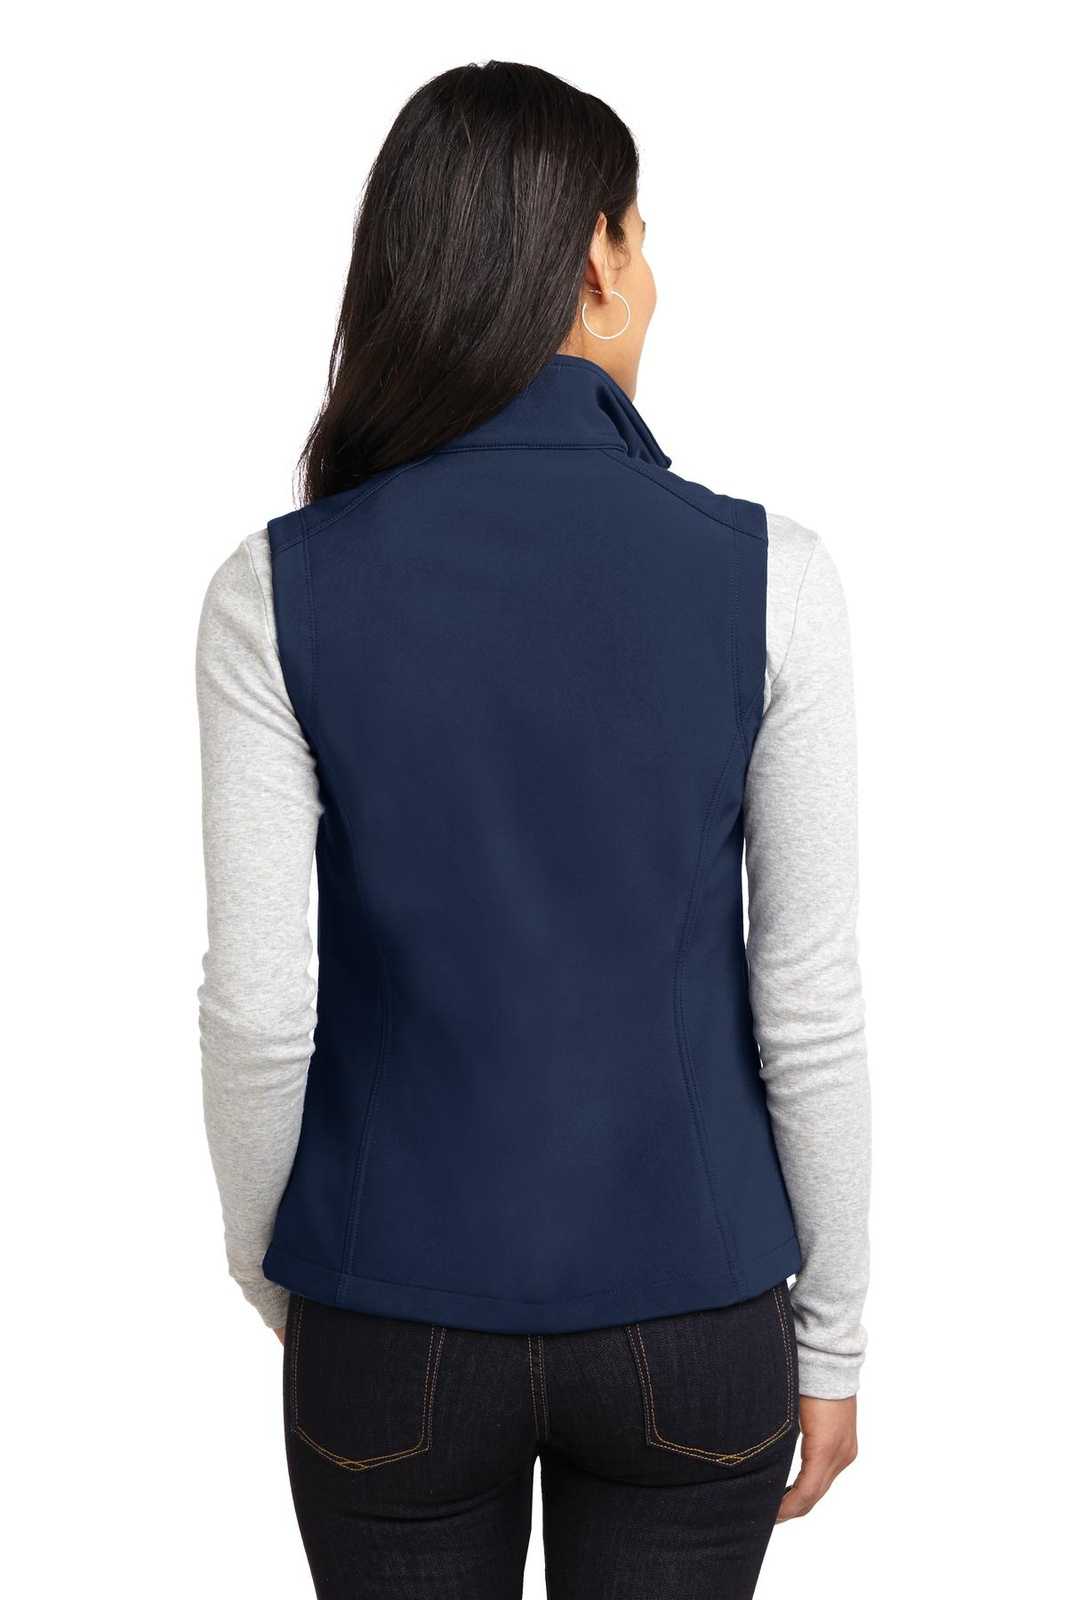 Port Authority L325 Ladies Core Soft Shell Vest - Dress Blue Navy - HIT a Double - 1